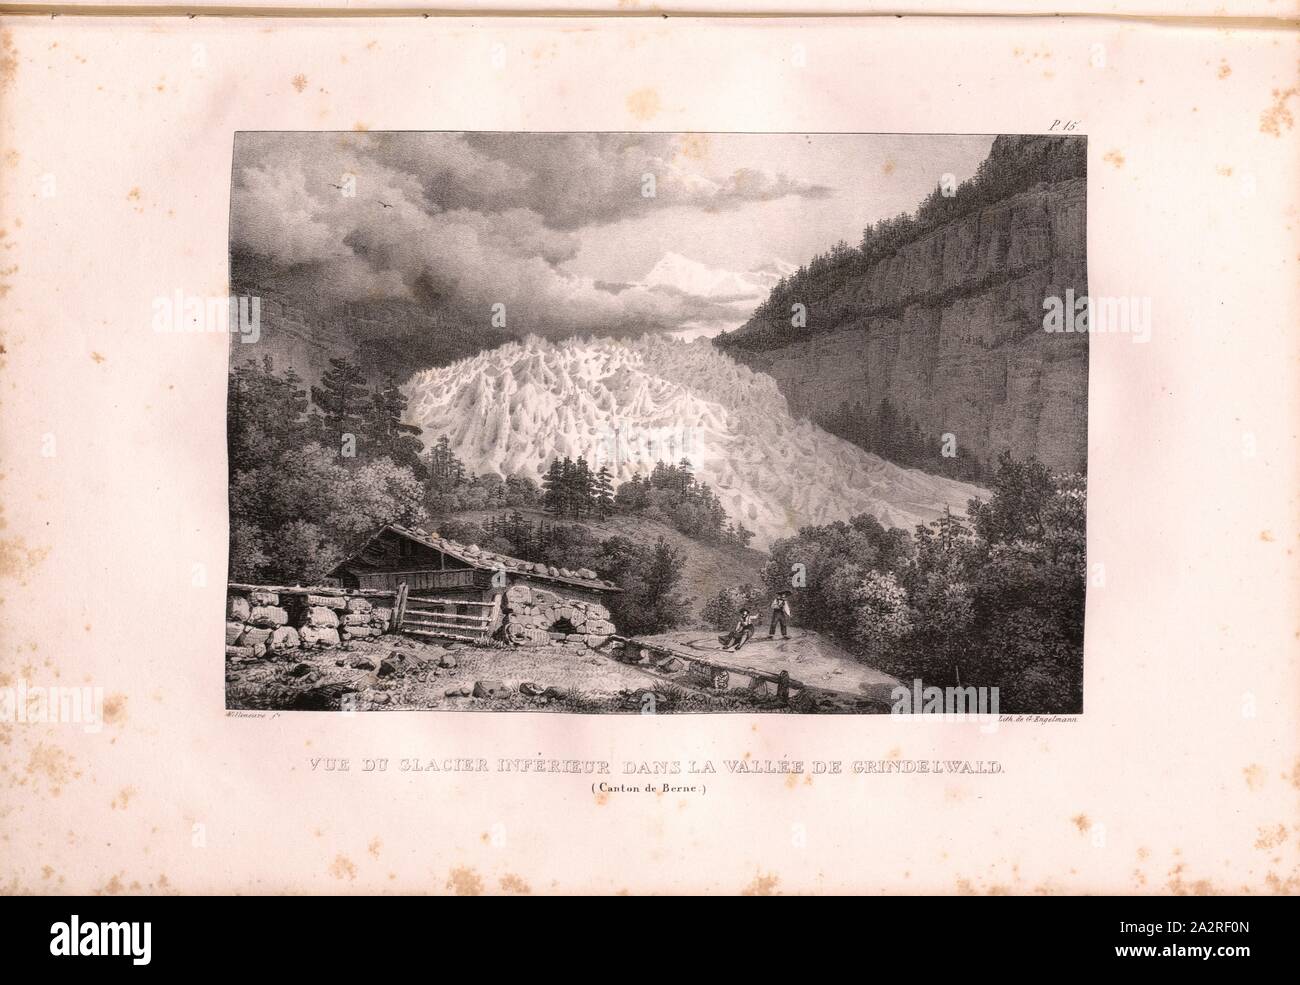 View of the lower glacier in the Grindelwald valley, View of the Grindelwald glacier, Signed: Villeneuve, G. Engelmann, lithograph, plate 15 (vol. 1, part 1), Villeneuve, M. (ft.); Engelmann, Godefroy (lith.), 1823, Hilaire Léon Sazerac, Godefroy Engelmann: Lettres sur la Suisse (...). Paris: [s.n.], 1823-1832 Stock Photo